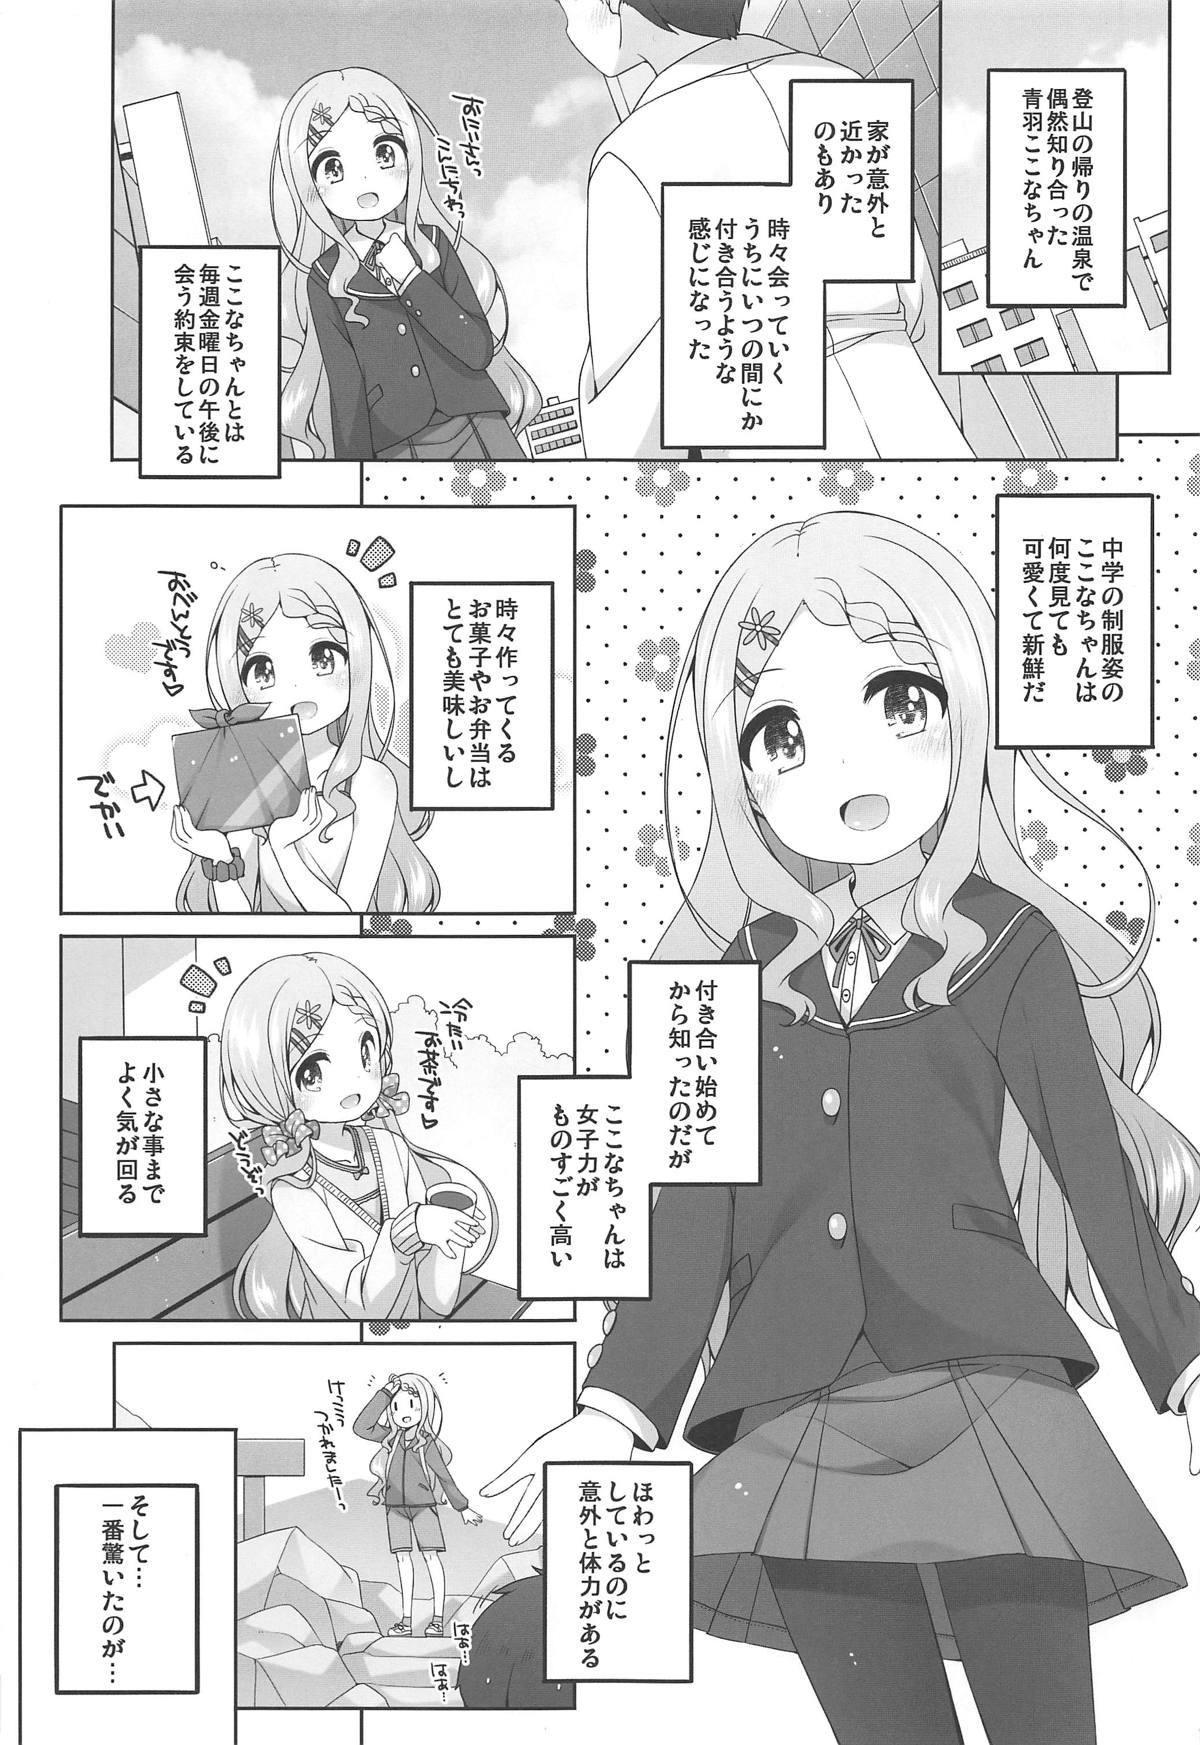 Bondagesex Kokona-chan Kawaii. - Yama no susume Pussylicking - Page 4